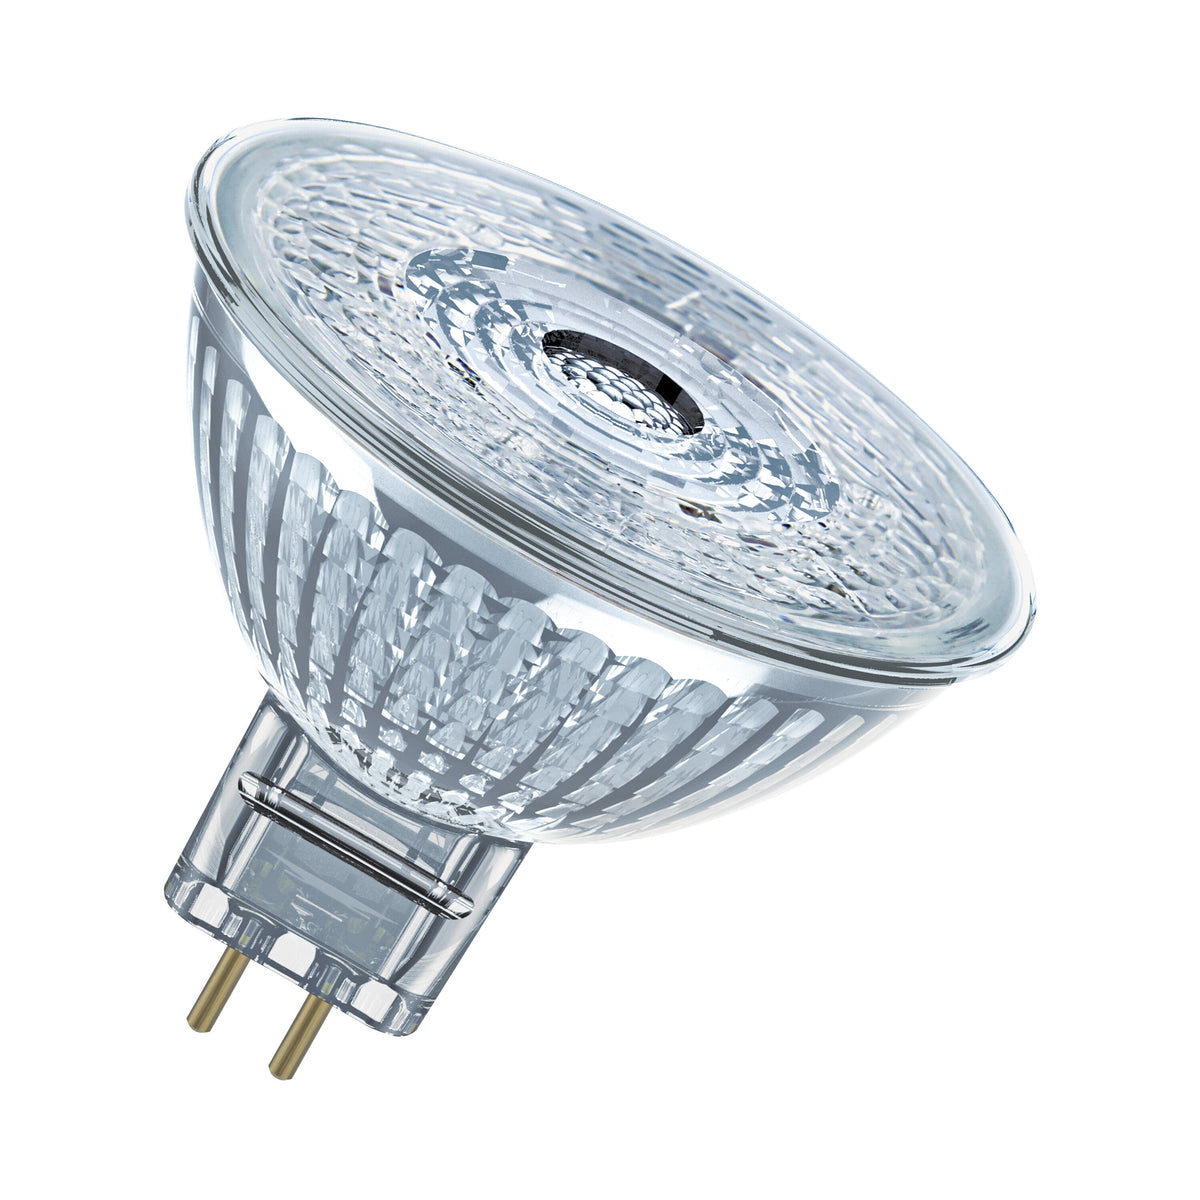 Lampada LED con riflettore OSRAM Star per attacco GU5.3, vetro trasparente, bianco caldo (2700K), 345 lumen, ricambio per lampadine convenzionali da 35 W, non dimmerabile, confezione da 2